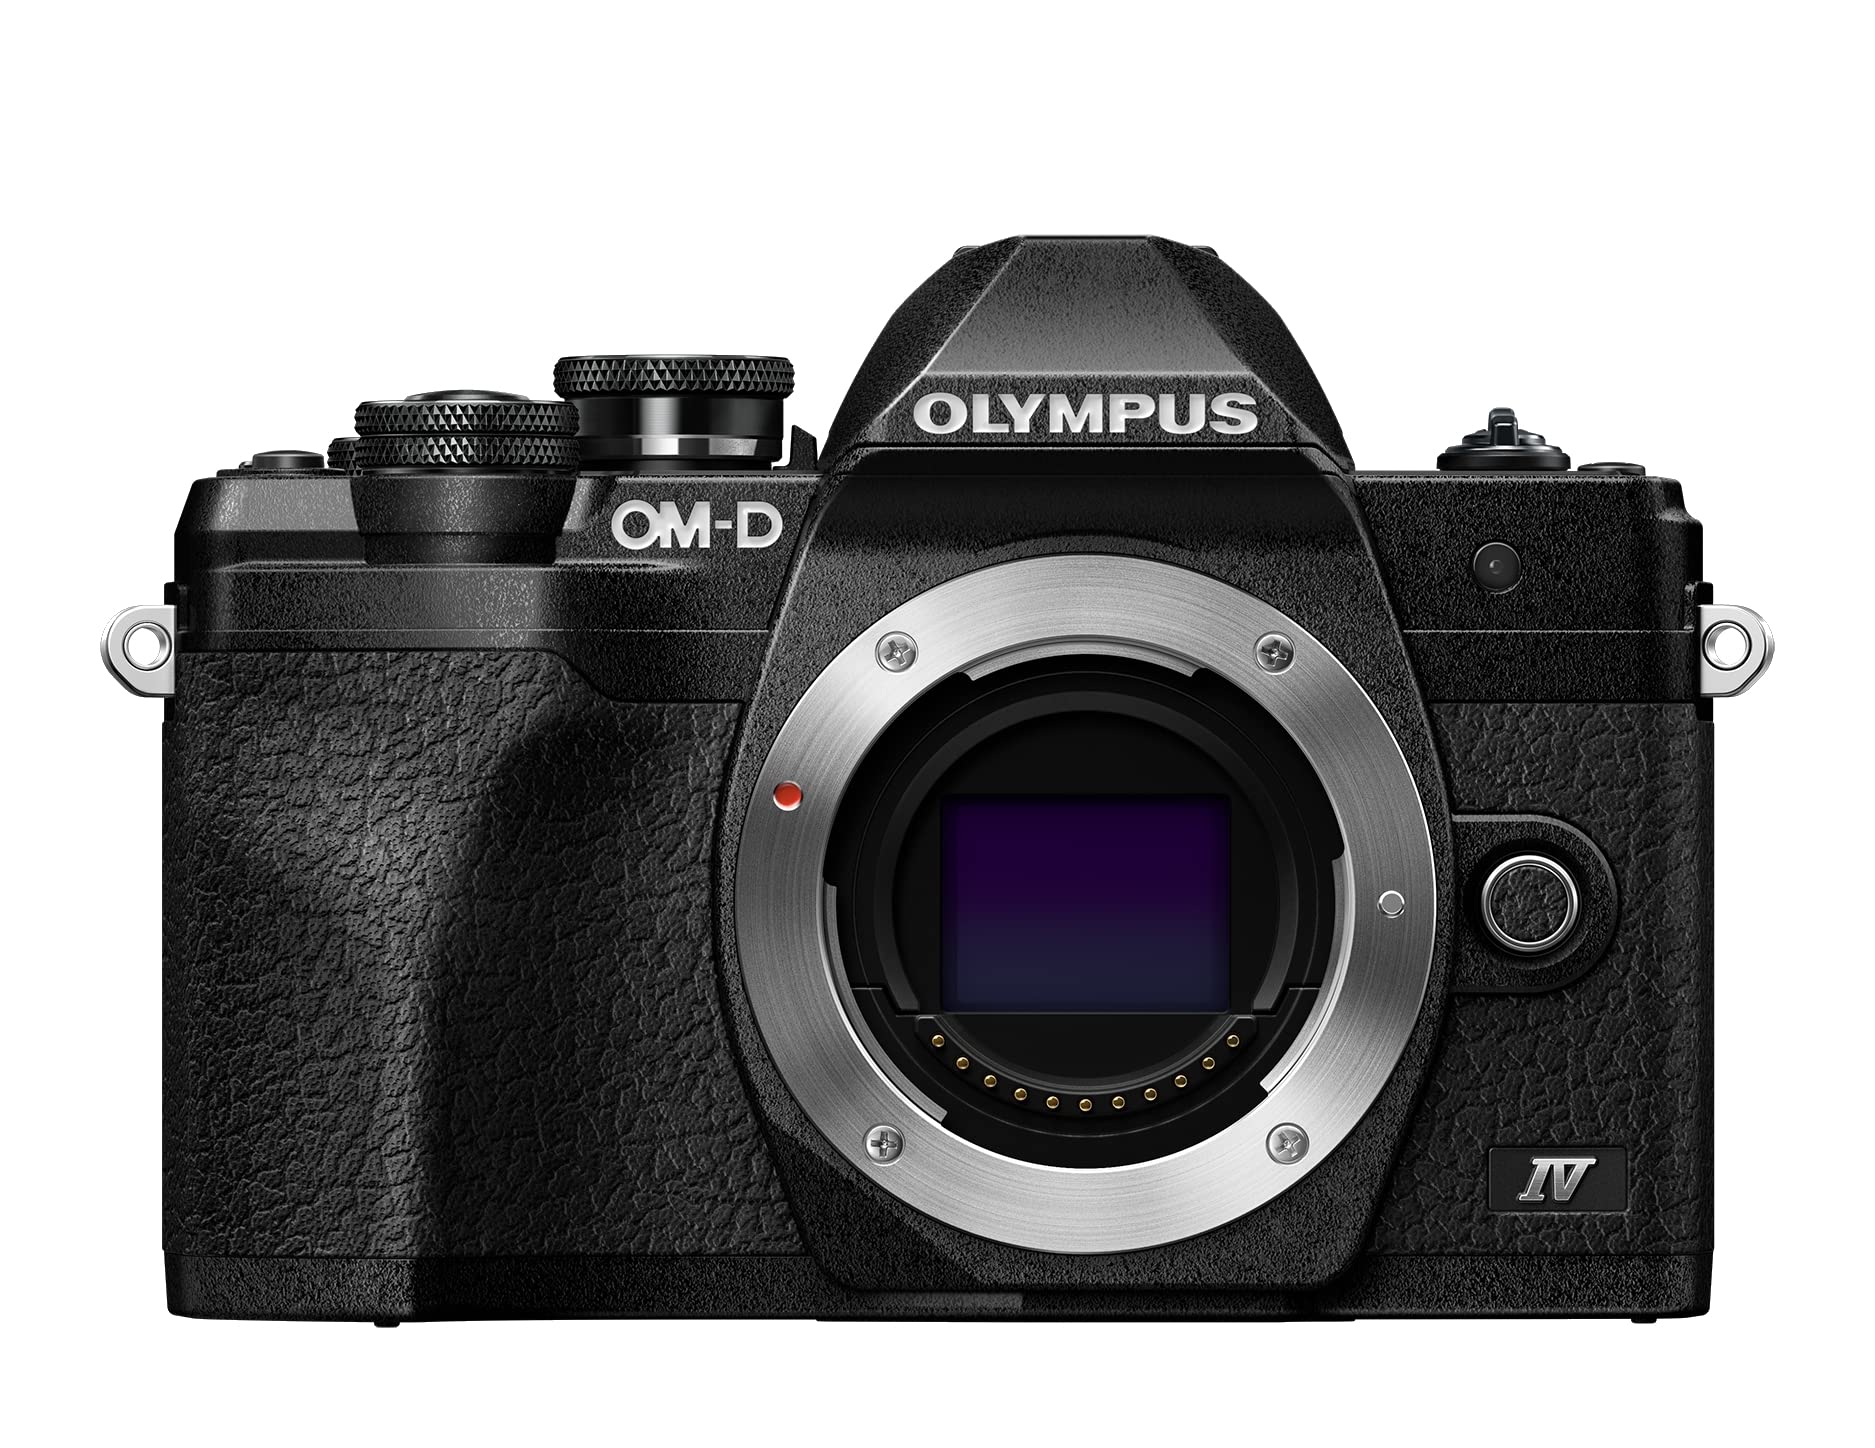 Olympus OM-D E-M10 Mark IV Micro-Four-Thirds-Systemkamera, 20 MP Sensor, 5-Achsen-Bildstabilisation, Selbstporträt-LCD-Bildschirm, elektronischer Sucher, 4K-Video, leistungsstarker AF, Wi-Fi, schwarz